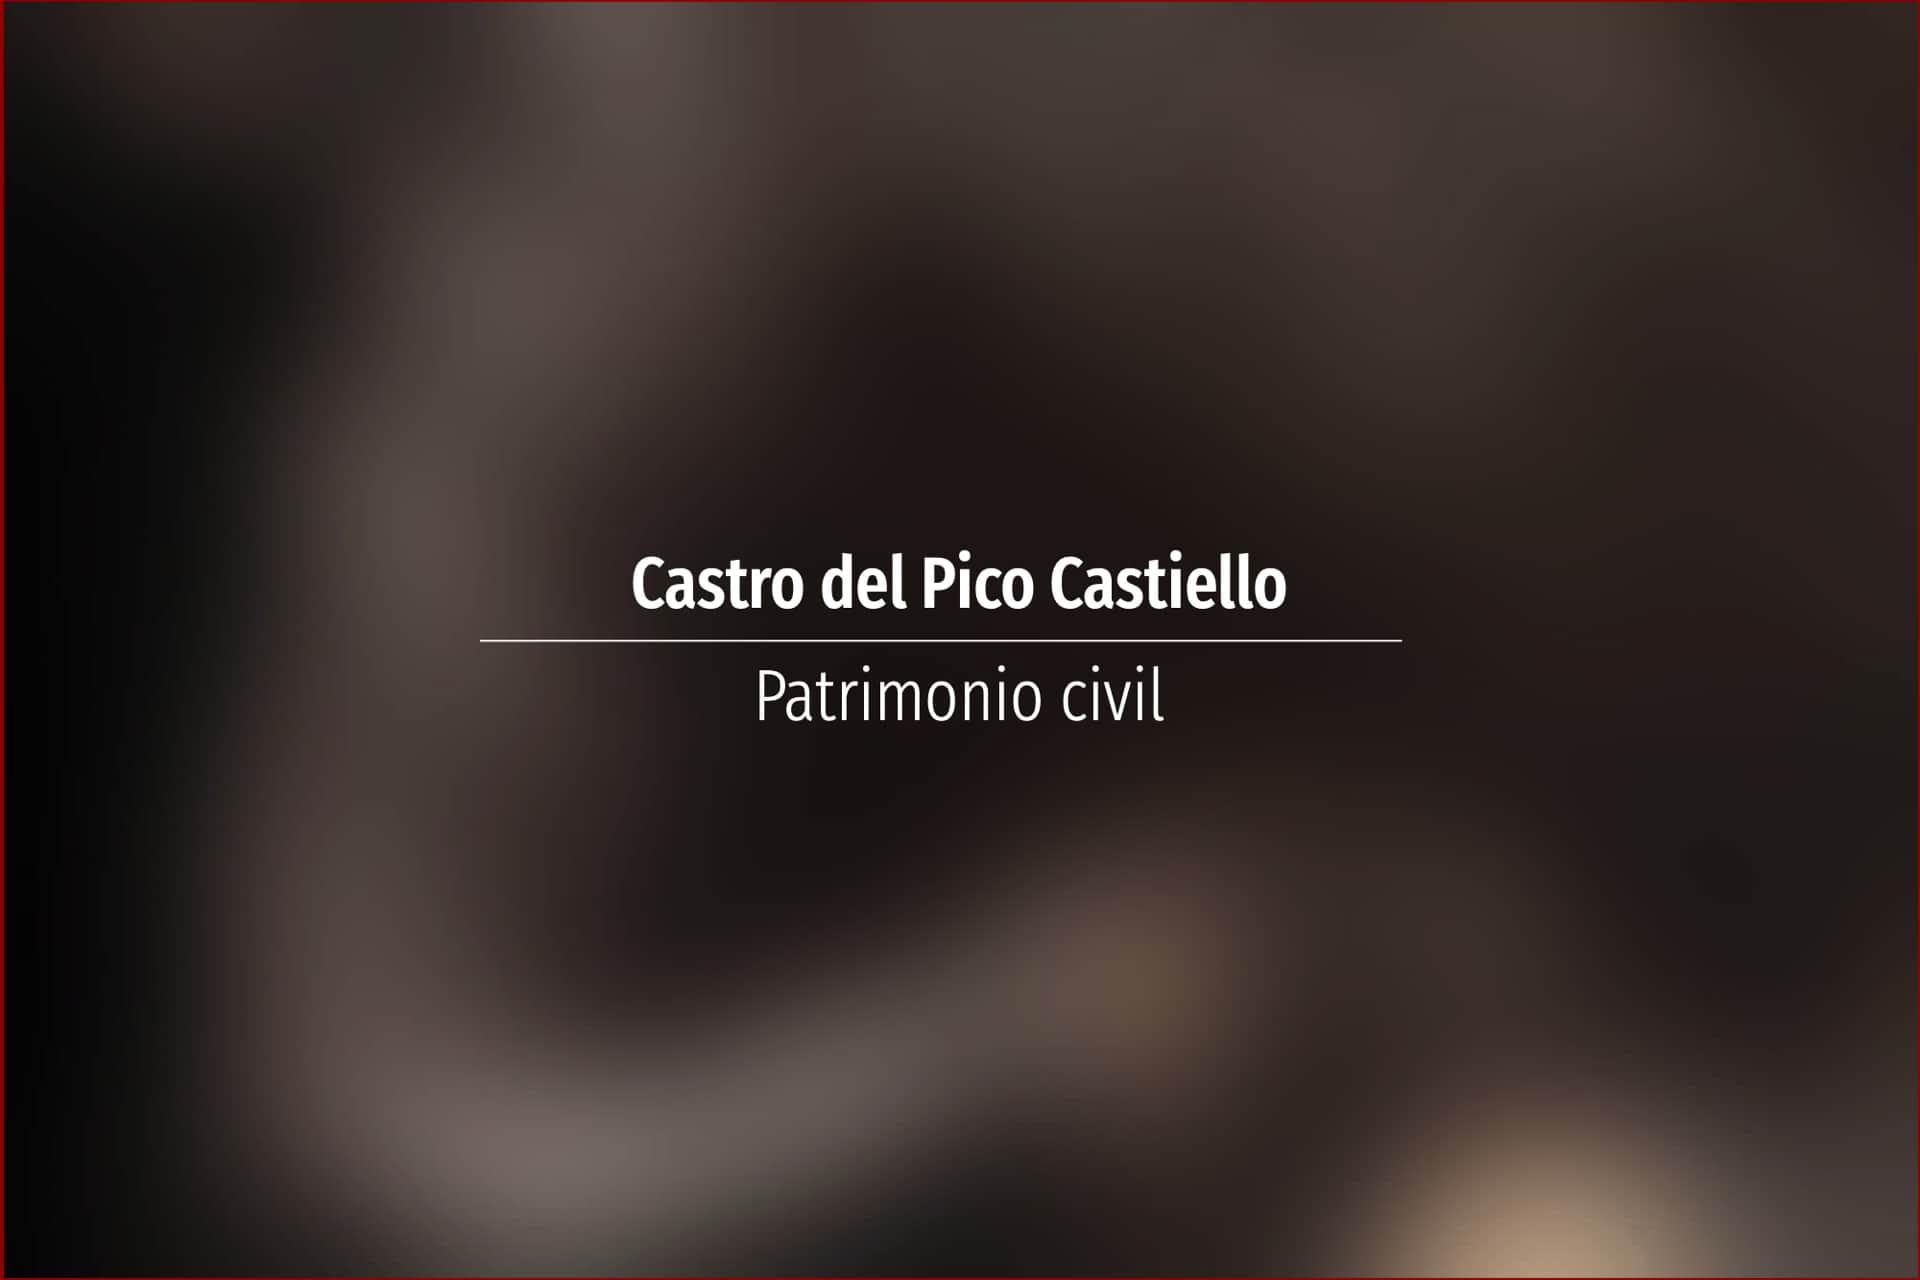 Castro del Pico Castiello